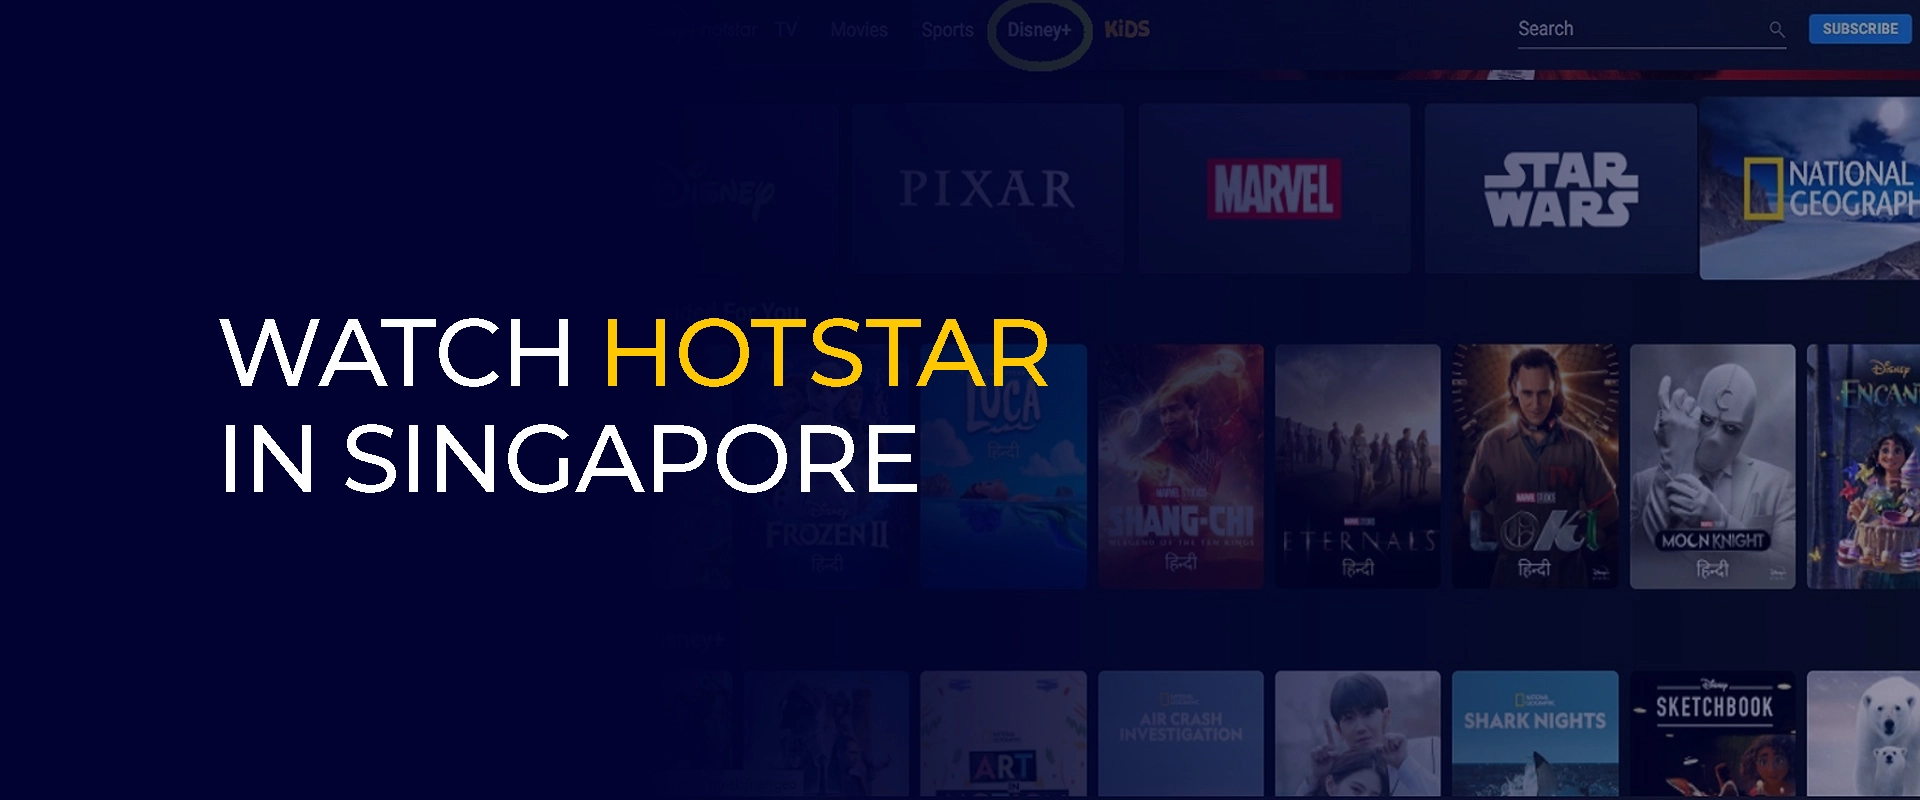 在新加坡观看 Hotstar